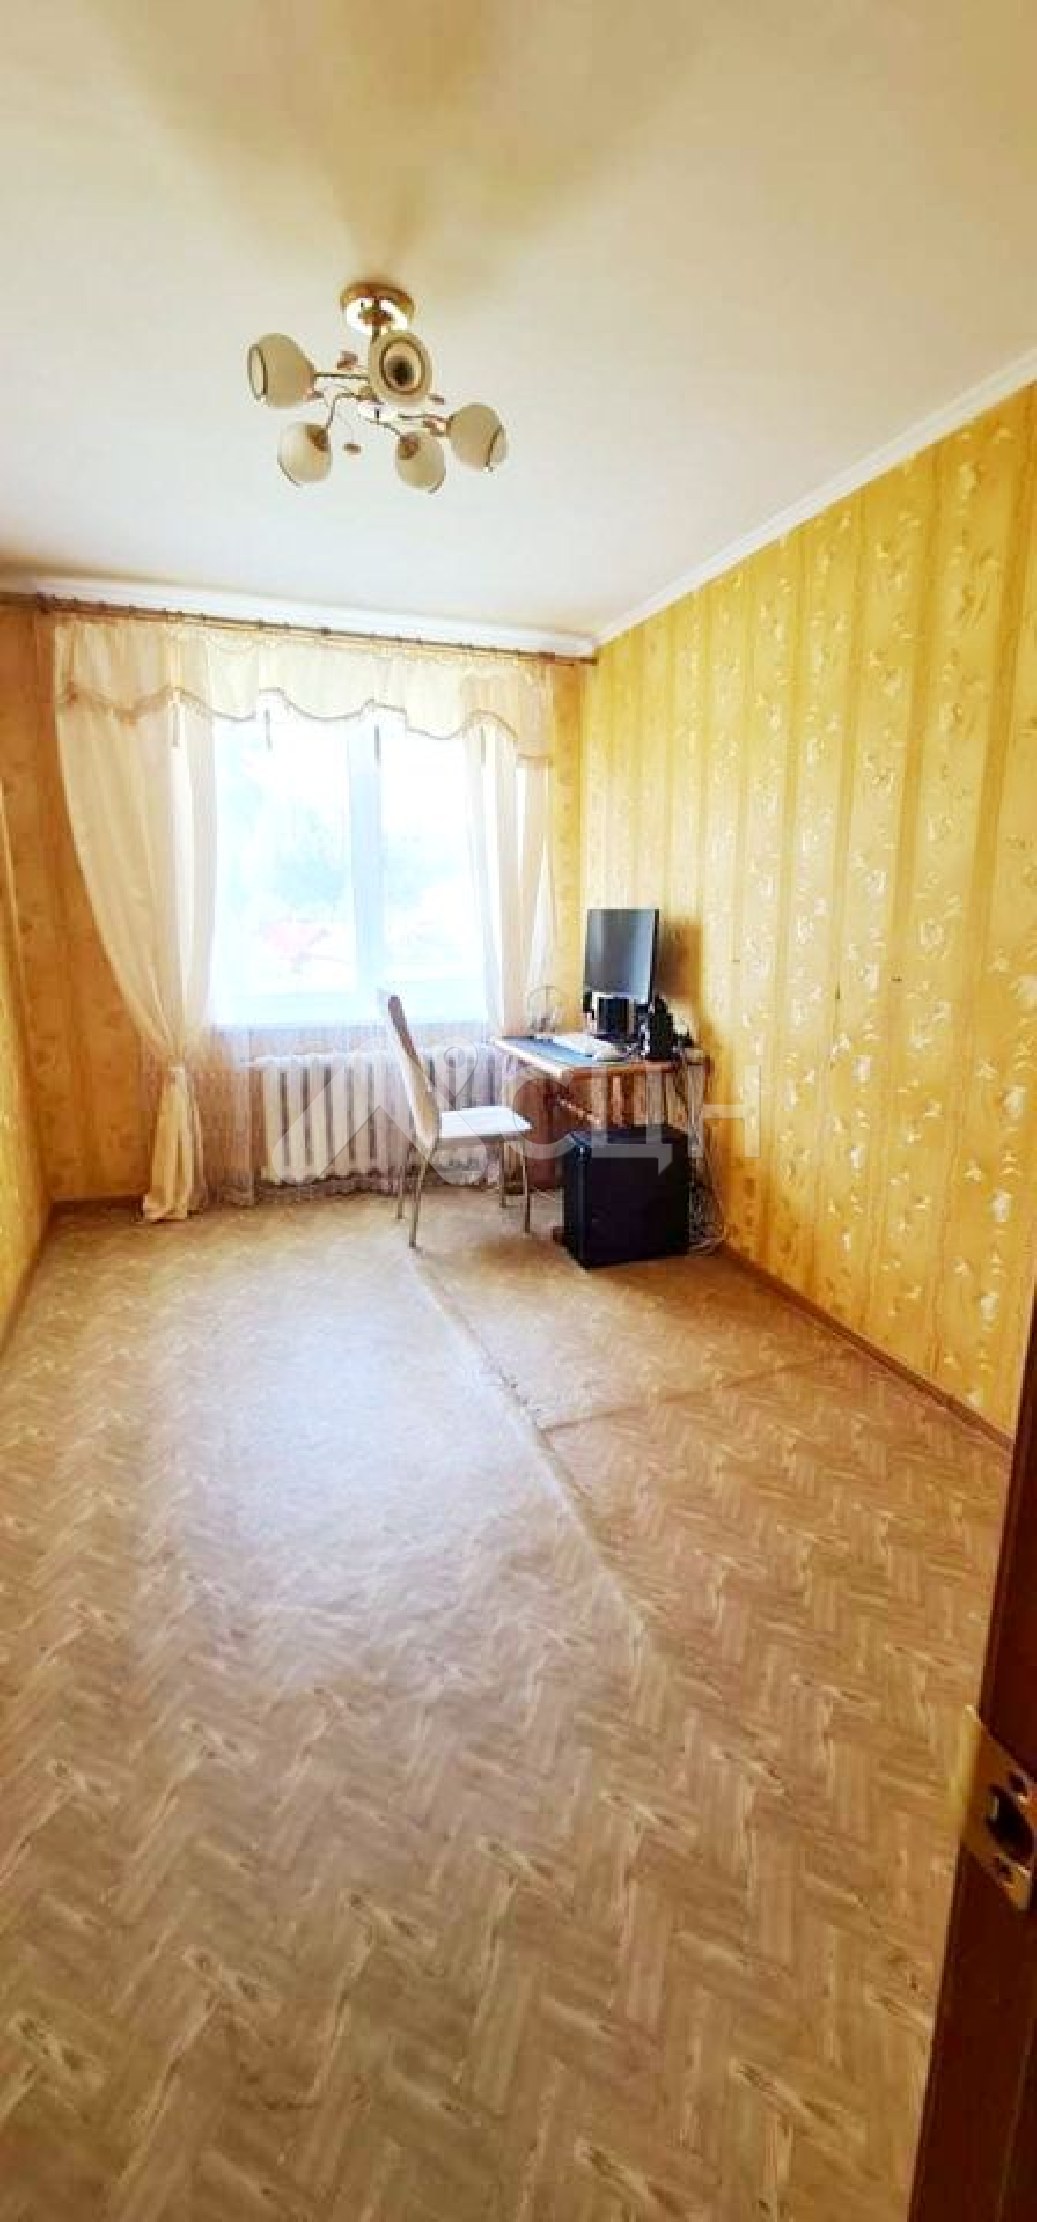 циан саров квартиры
: Г. Сатис, улица Заводская, 12, 2-комн квартира, этаж 3 из 3, продажа.